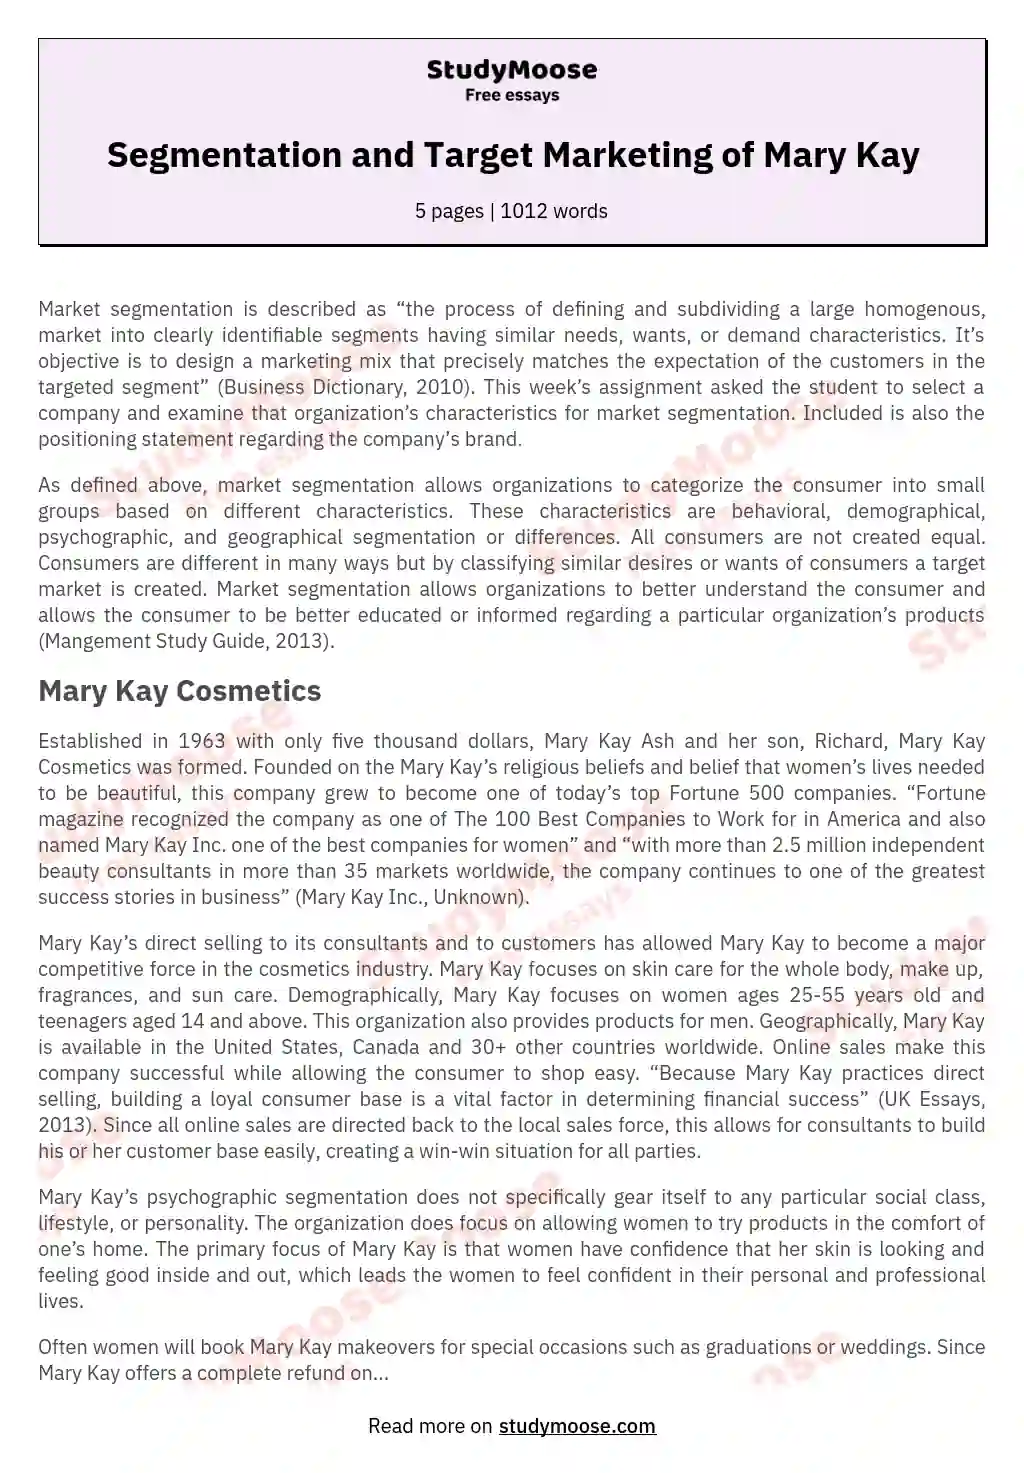 Segmentation and Target Marketing of Mary Kay essay